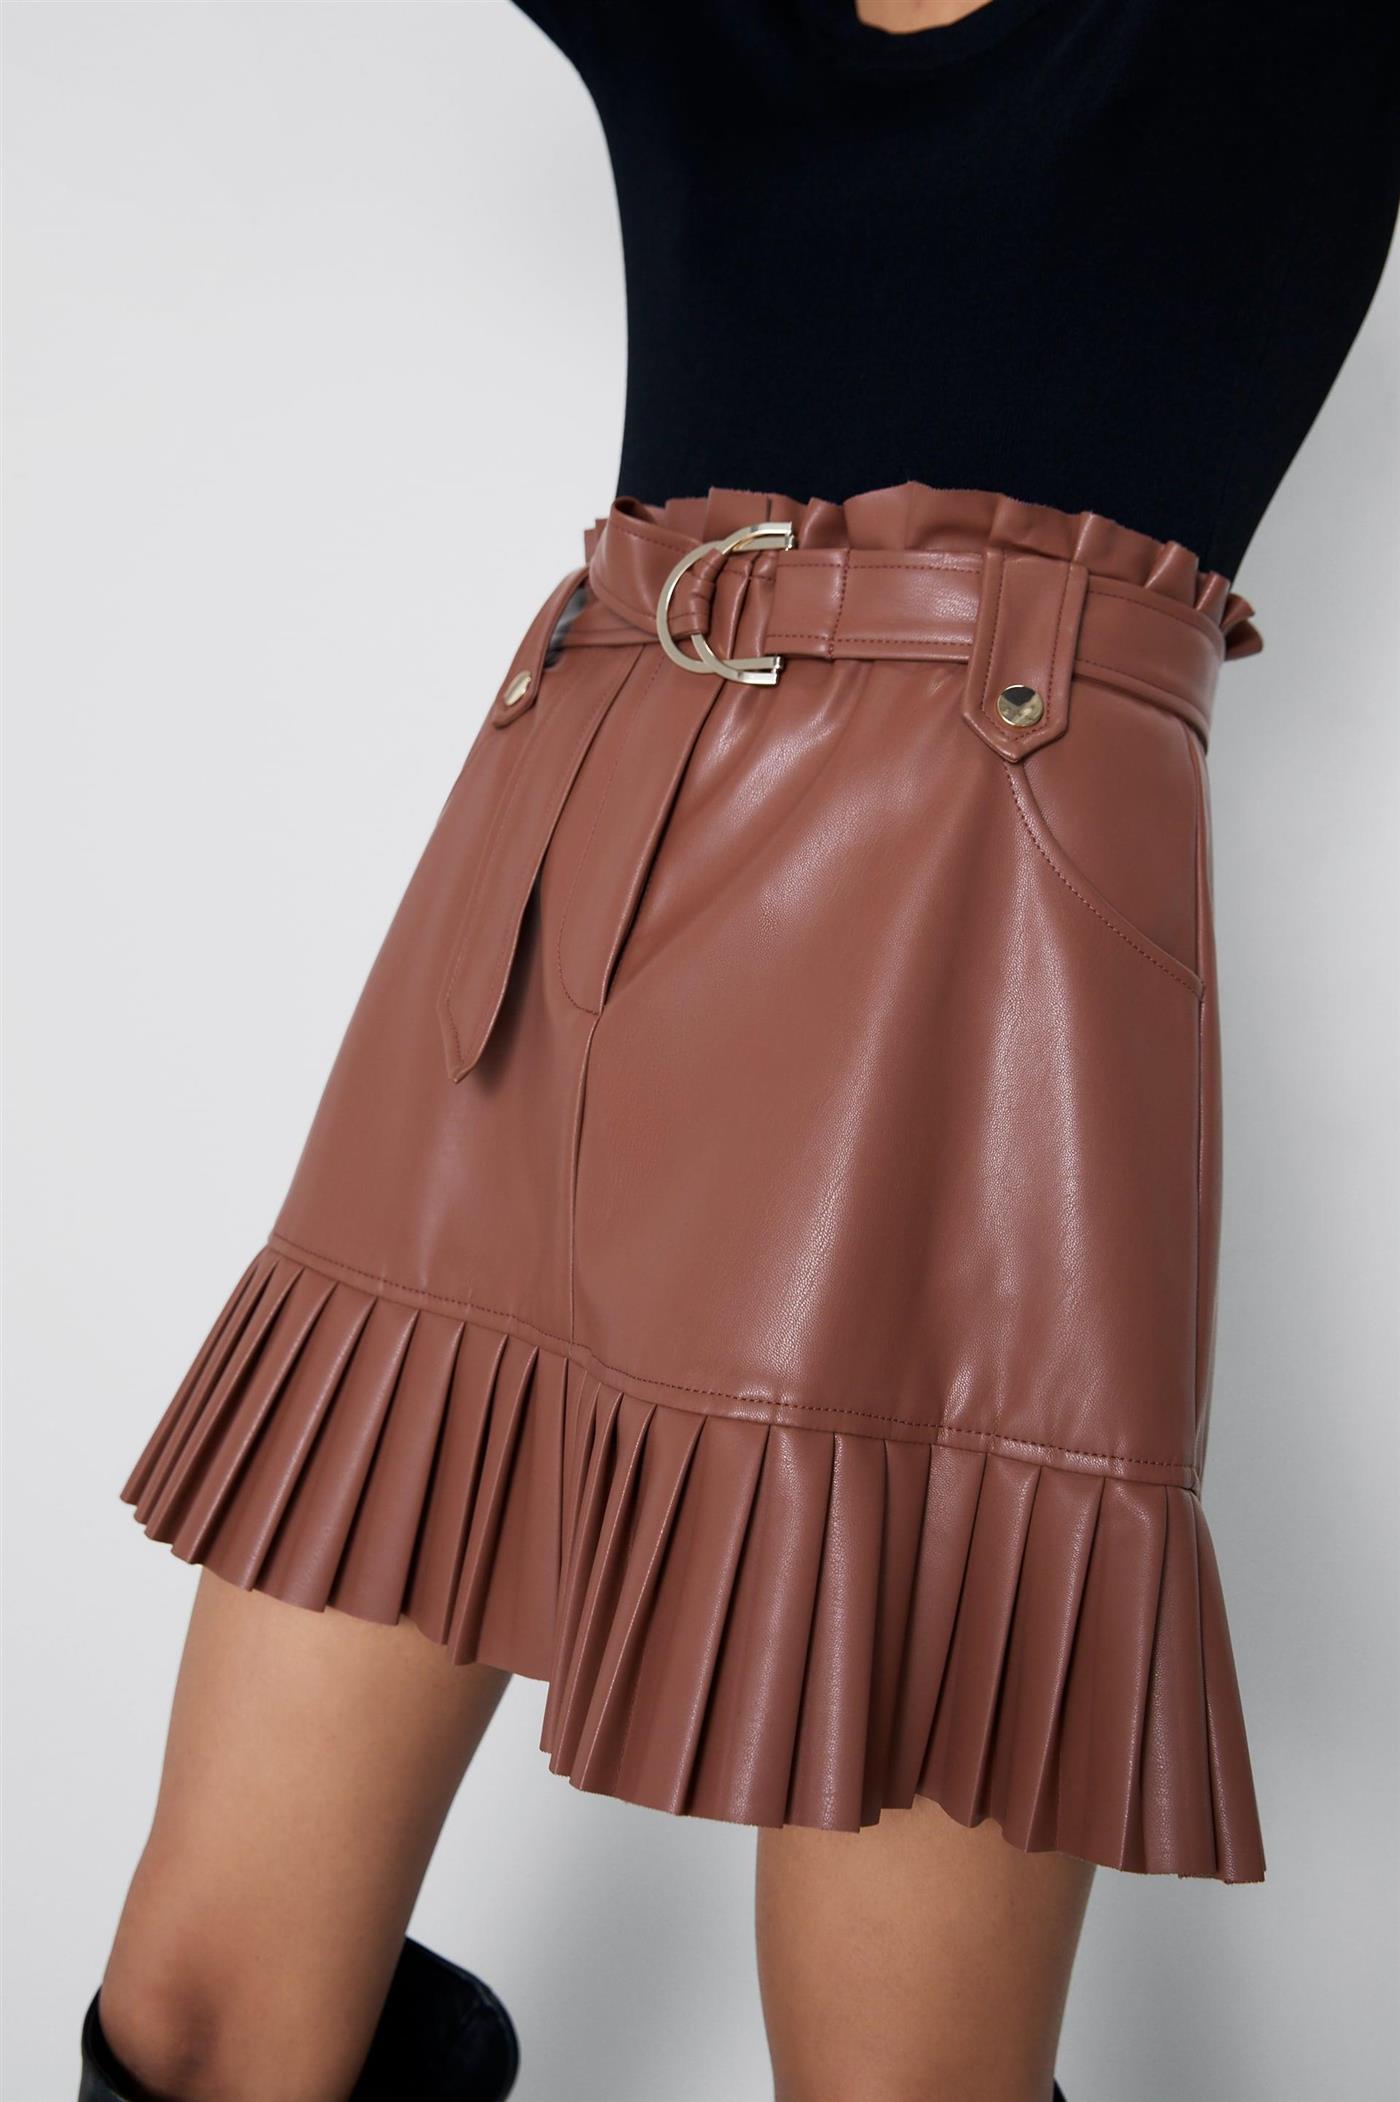 Zara falda plisada 29,95€